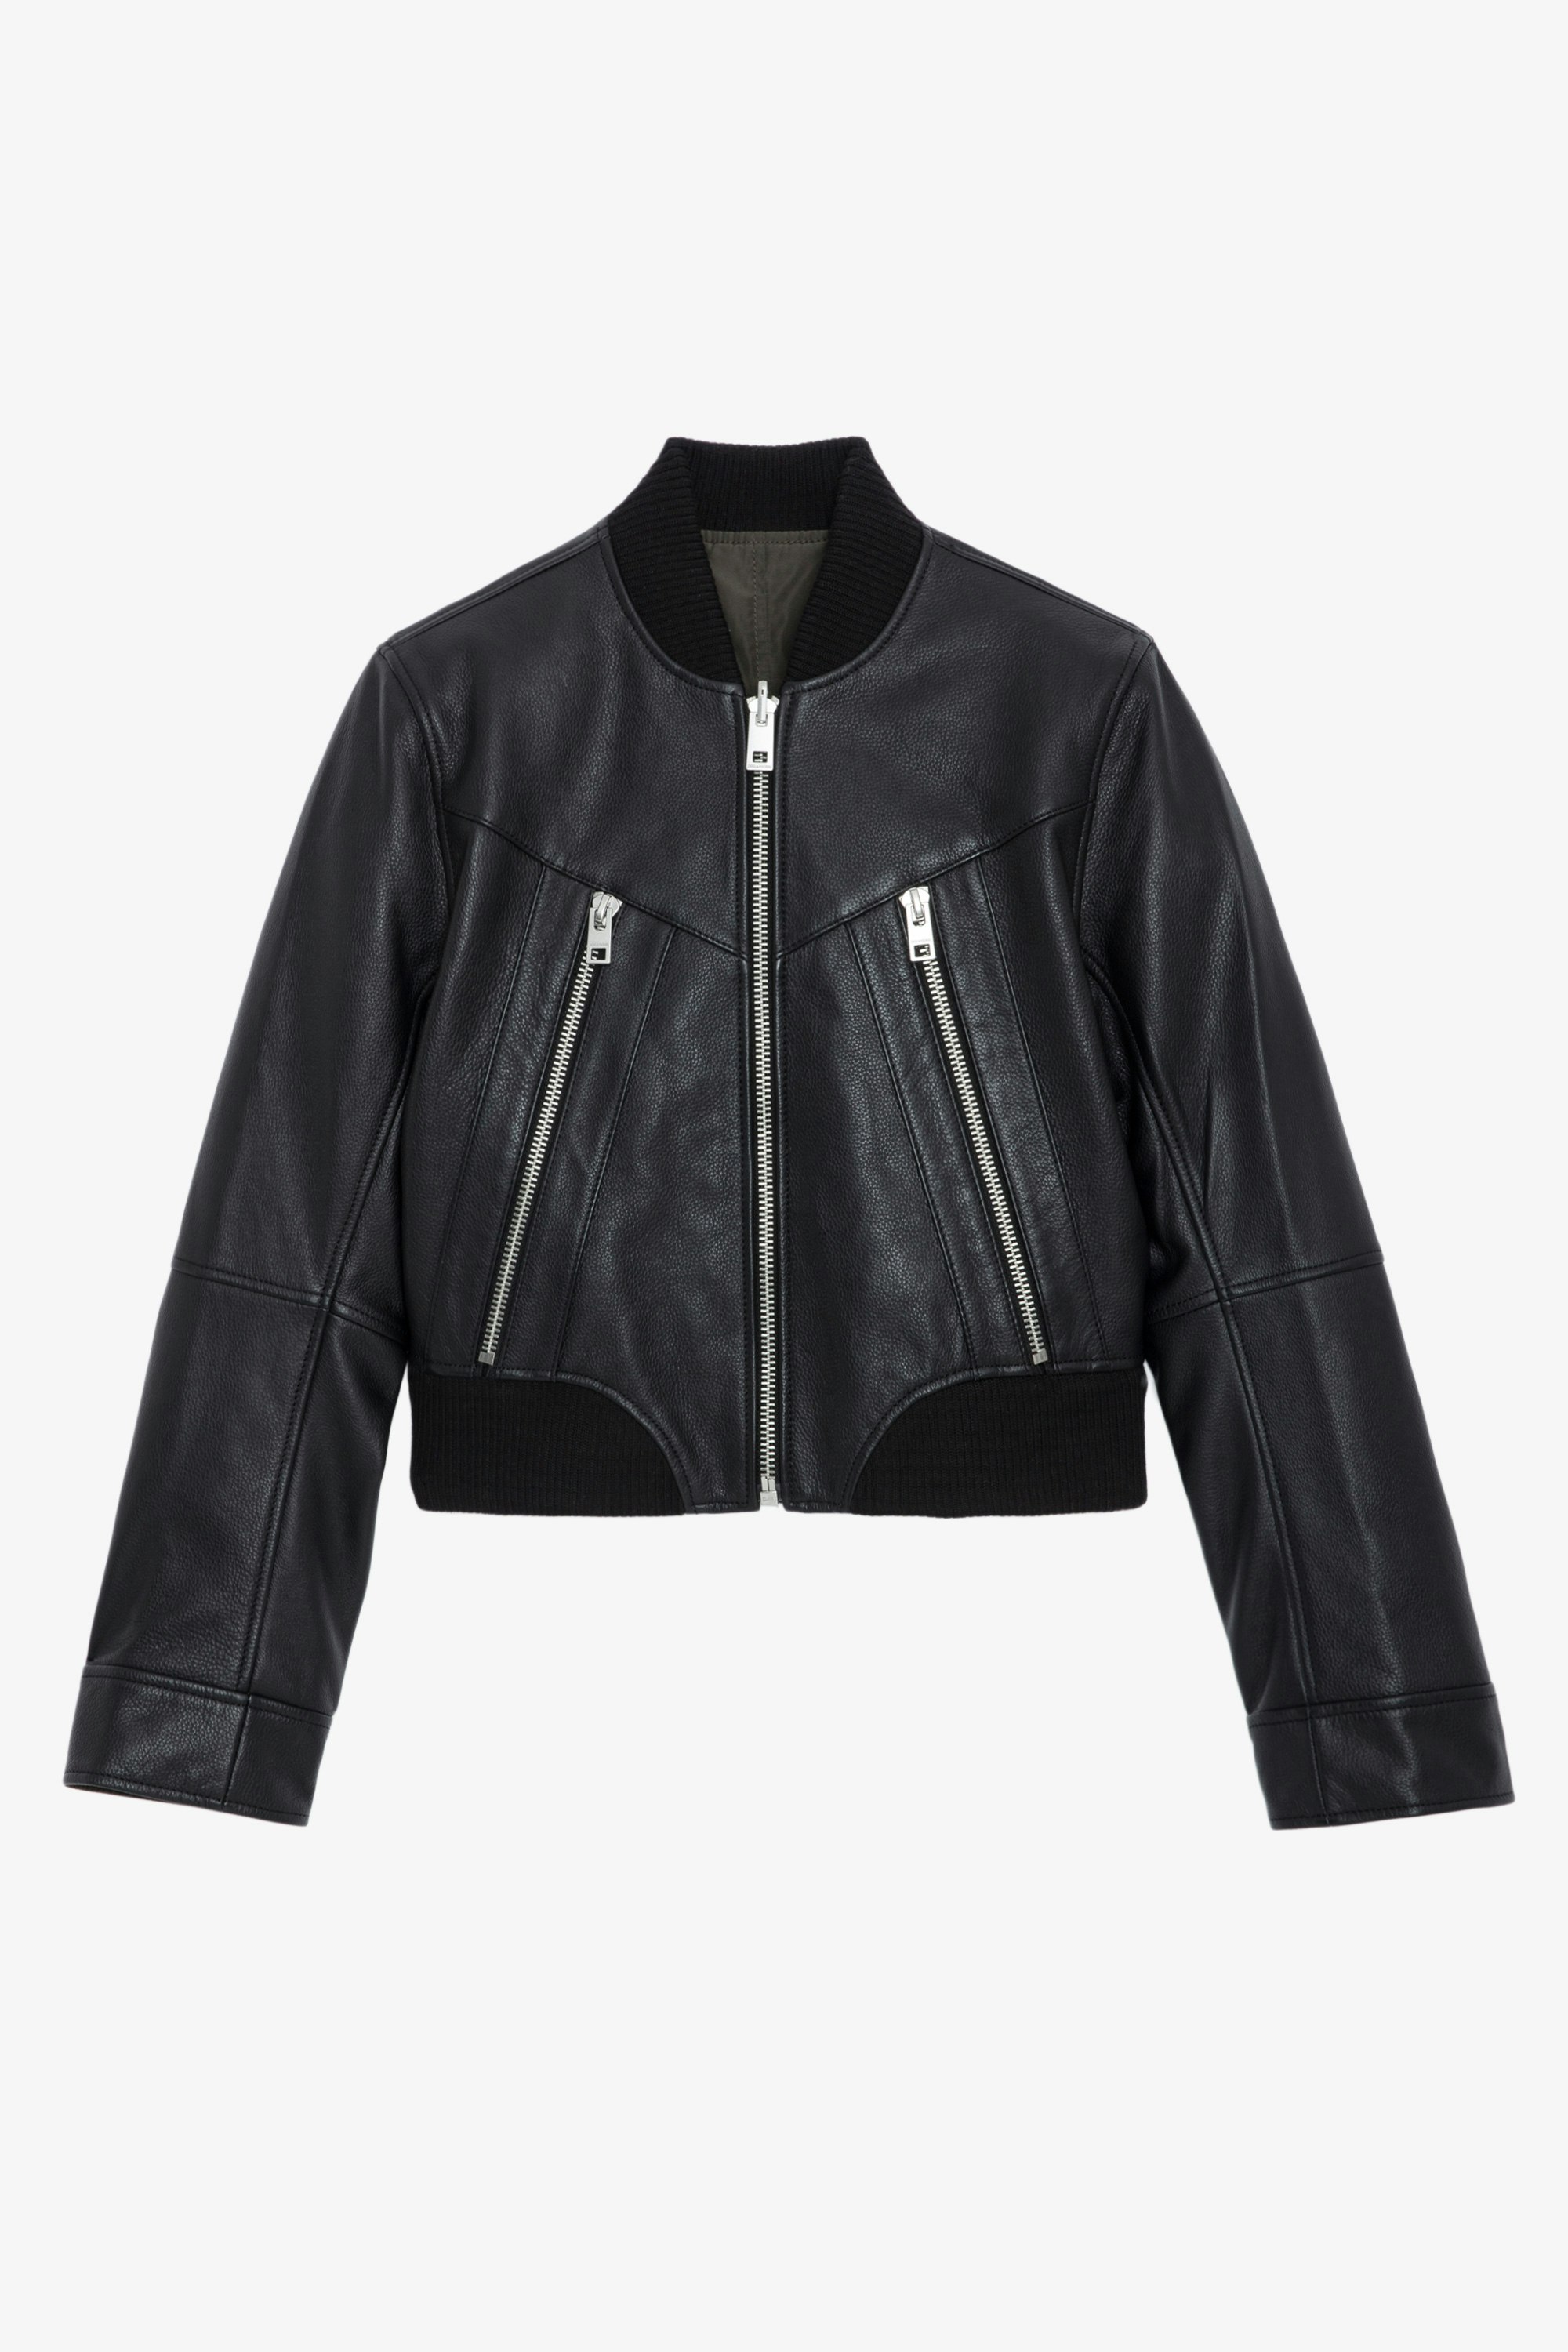 Jacke Bunta Leder - Kurze Wendejacke aus schwarzem Leder und braunem Stoff mit Reißverschluss, Druckknöpfen und Taschen.